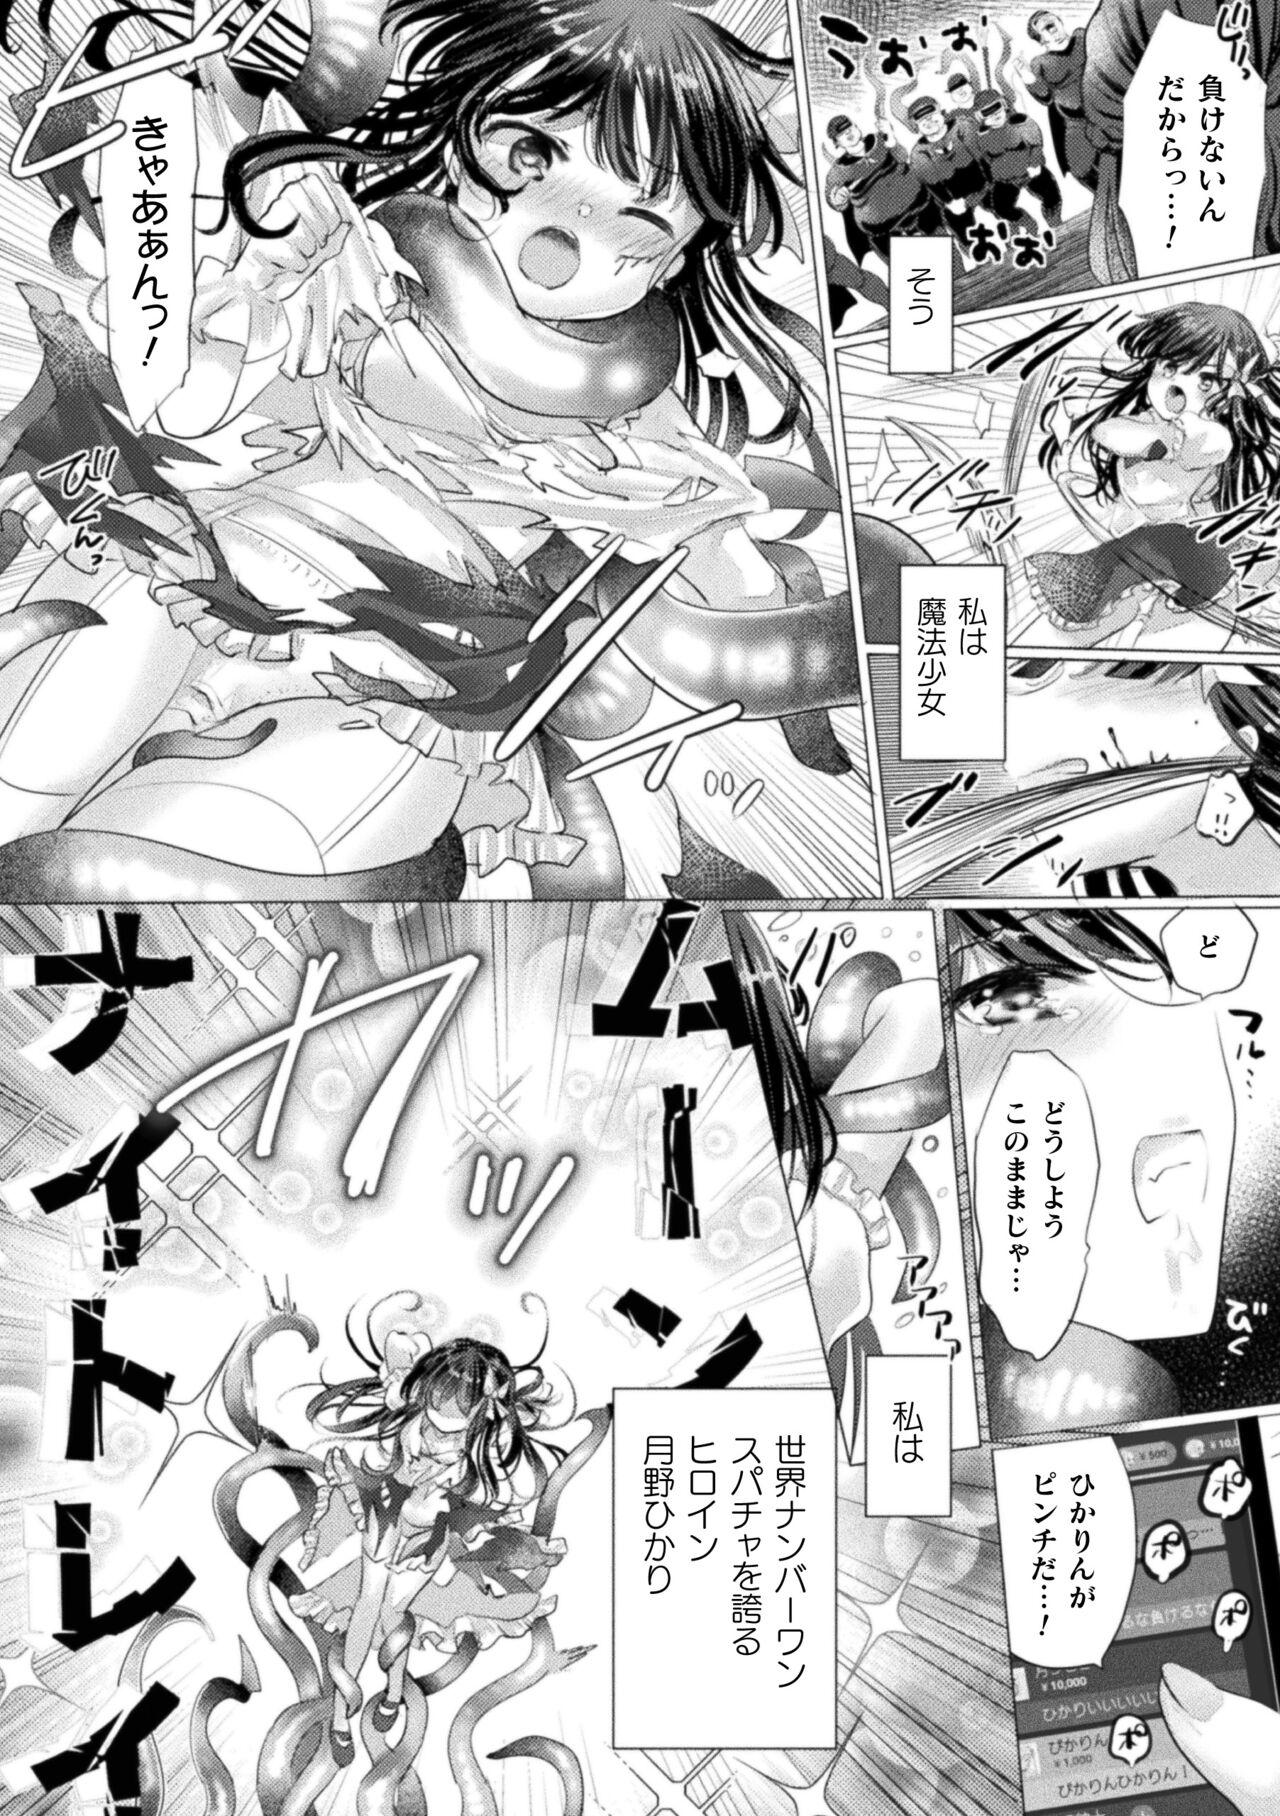 2D Comic Magazine Mesugaki Henshin Heroine Kikaikan Seisai Hijou no Wakarase Machine de Renzoku Loli Acme Vol. 3 43